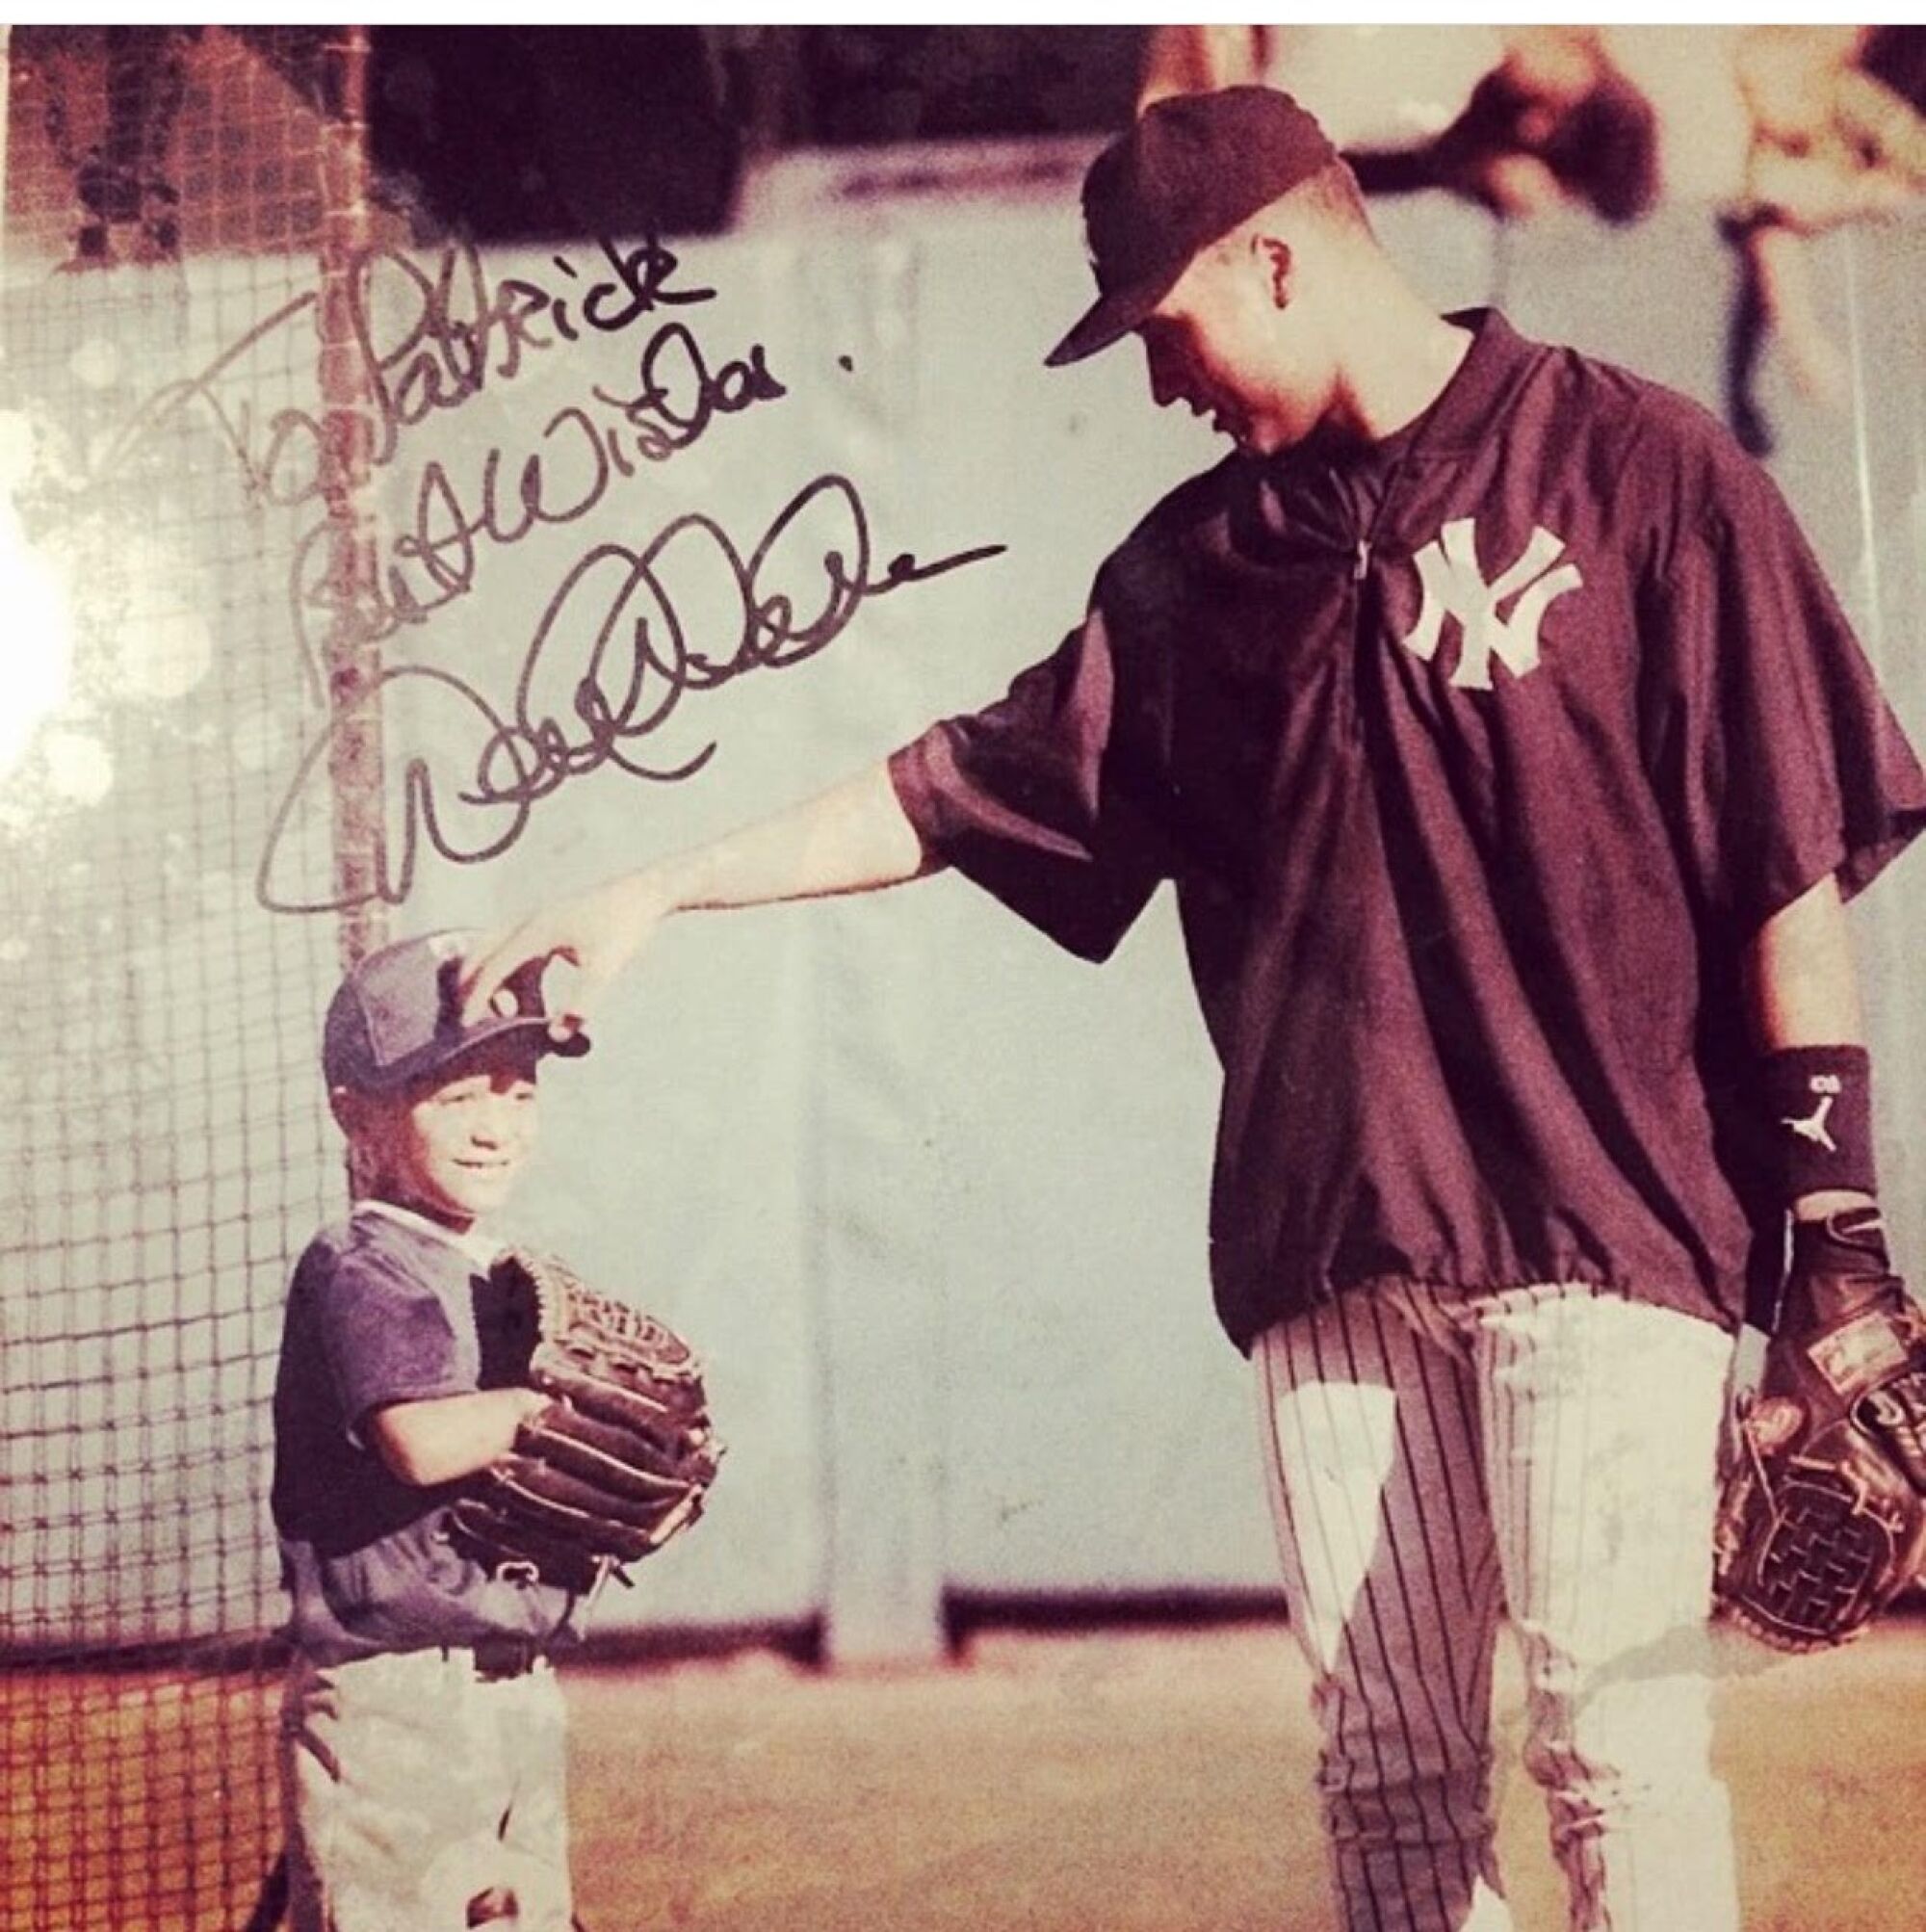 Великий Янки Дерек Джетер подписал это фото и подарил его маленькому Патрику Махоумсу.